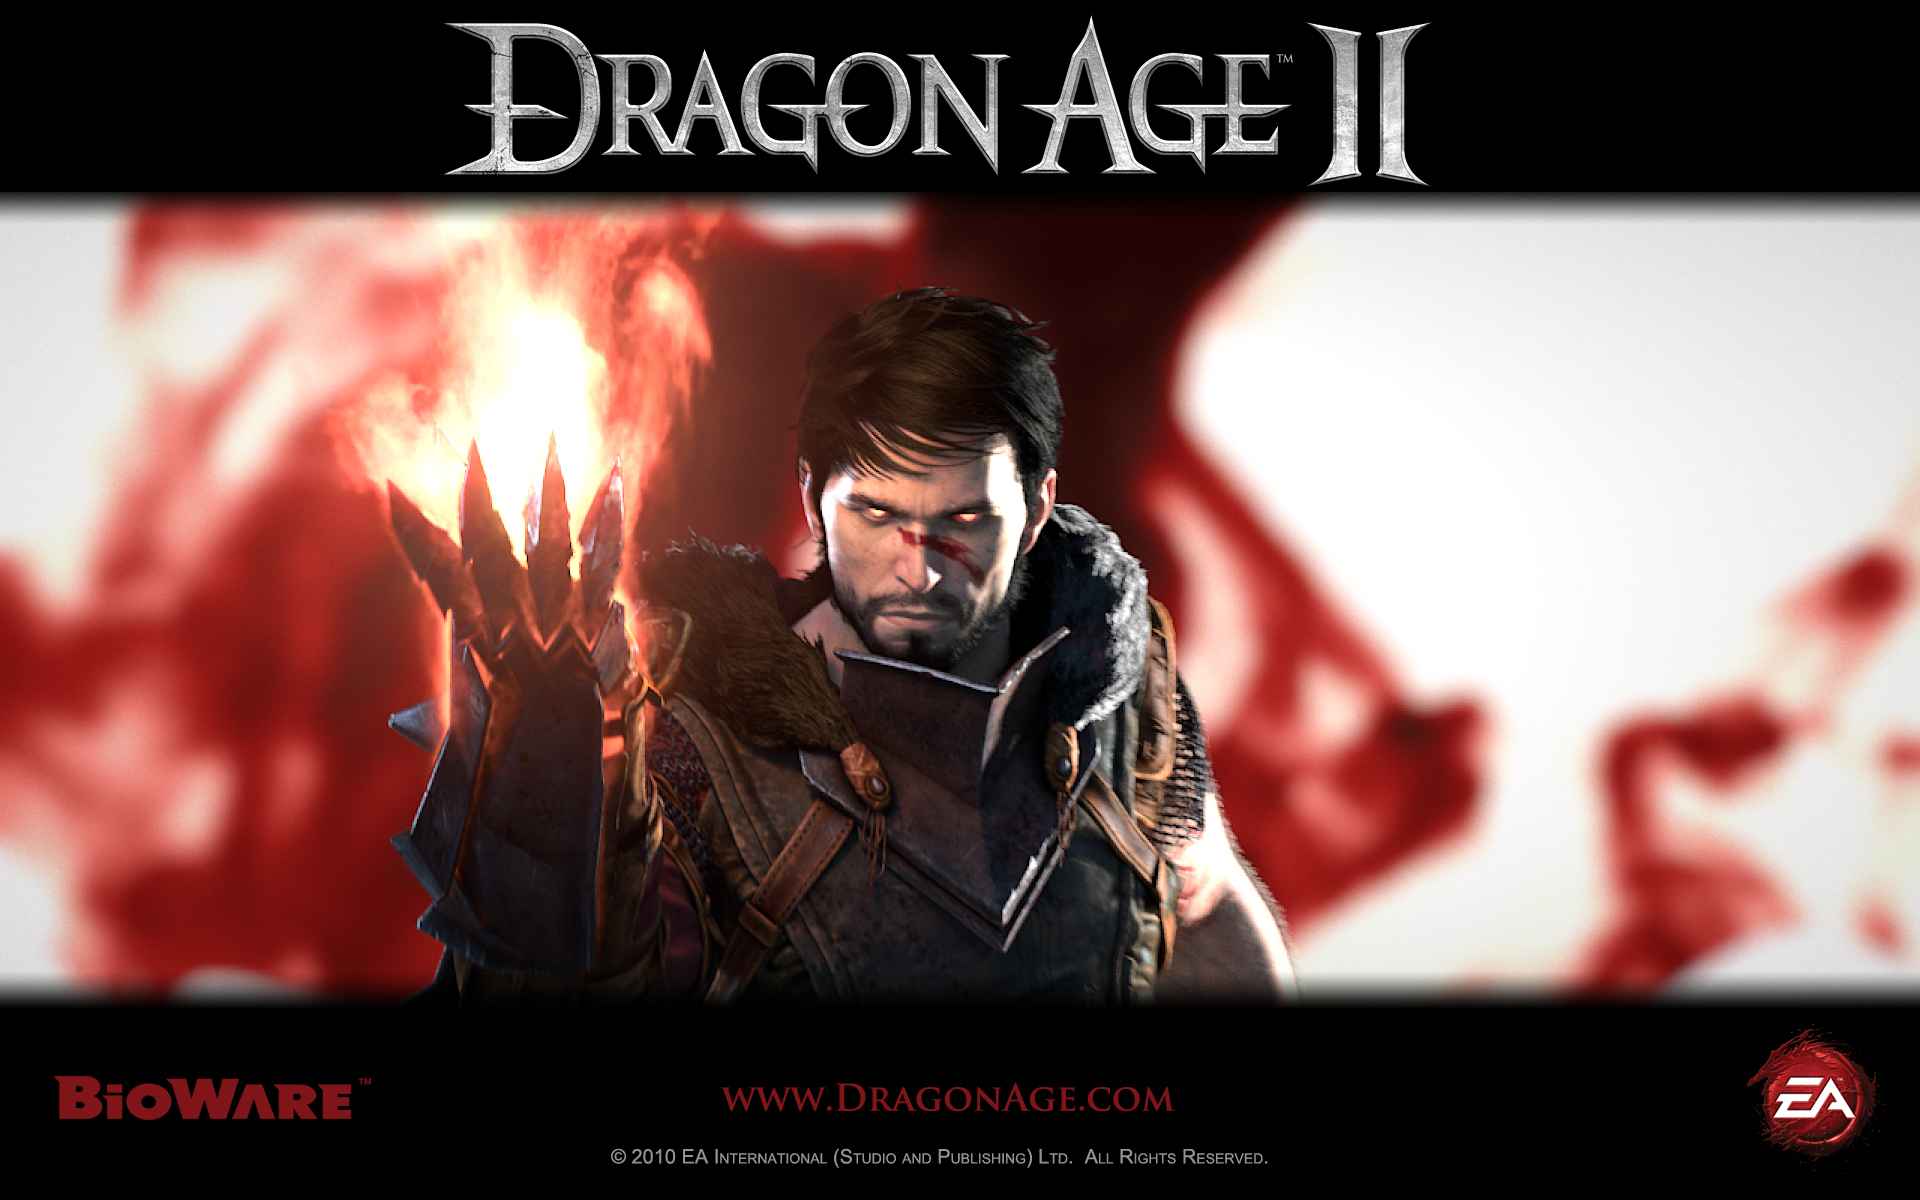 Recomendação] Série Dragon Age (Origins e 2)